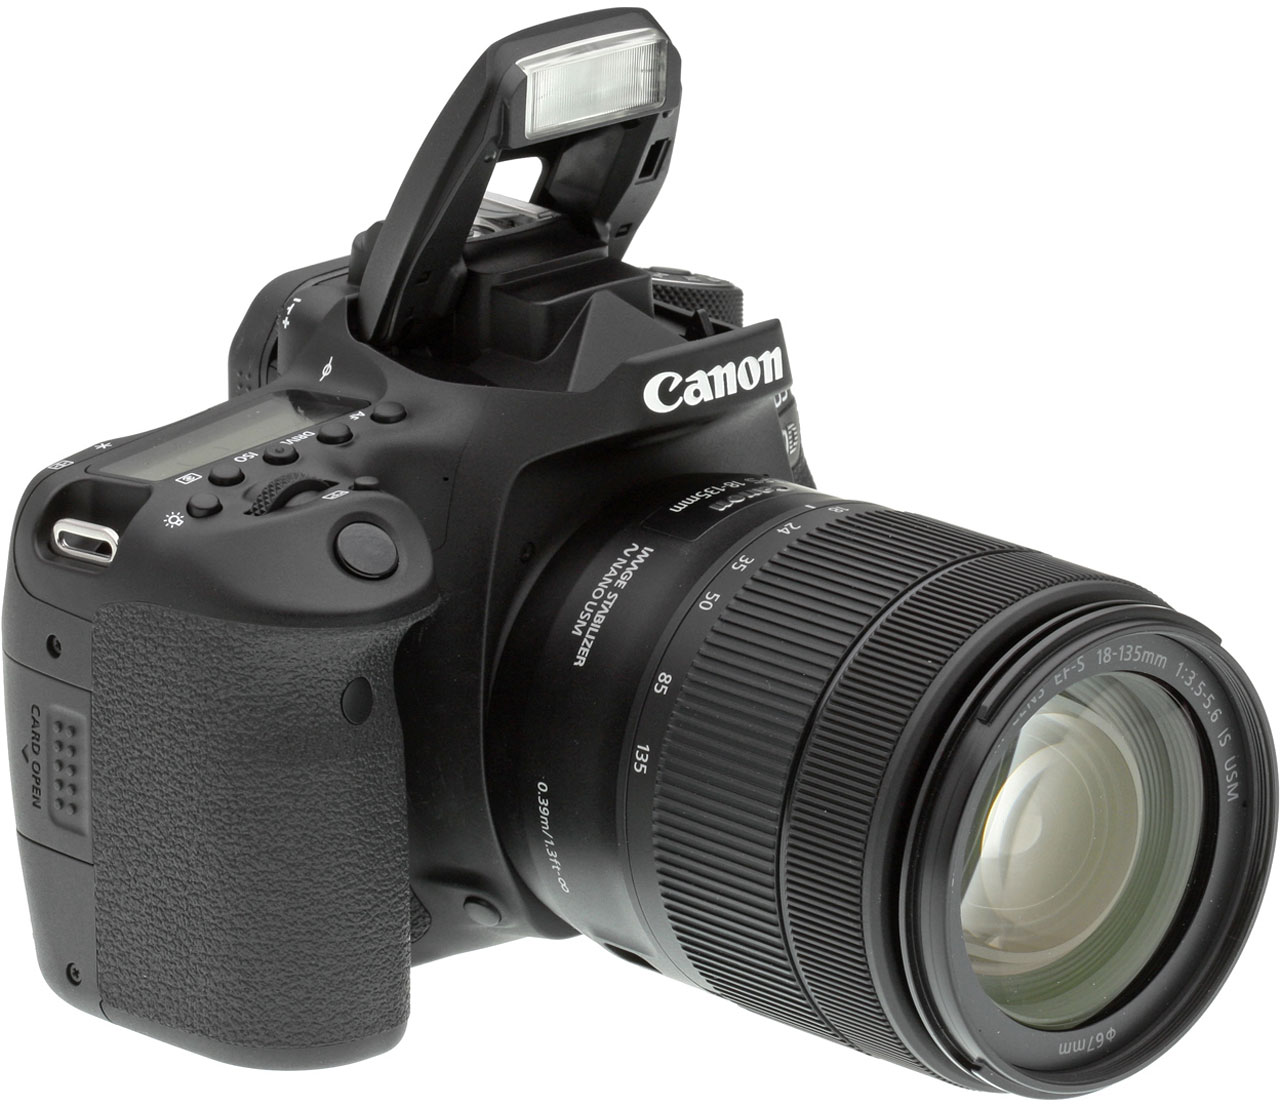 Assimileren antwoord Niet essentieel Canon 90D Review